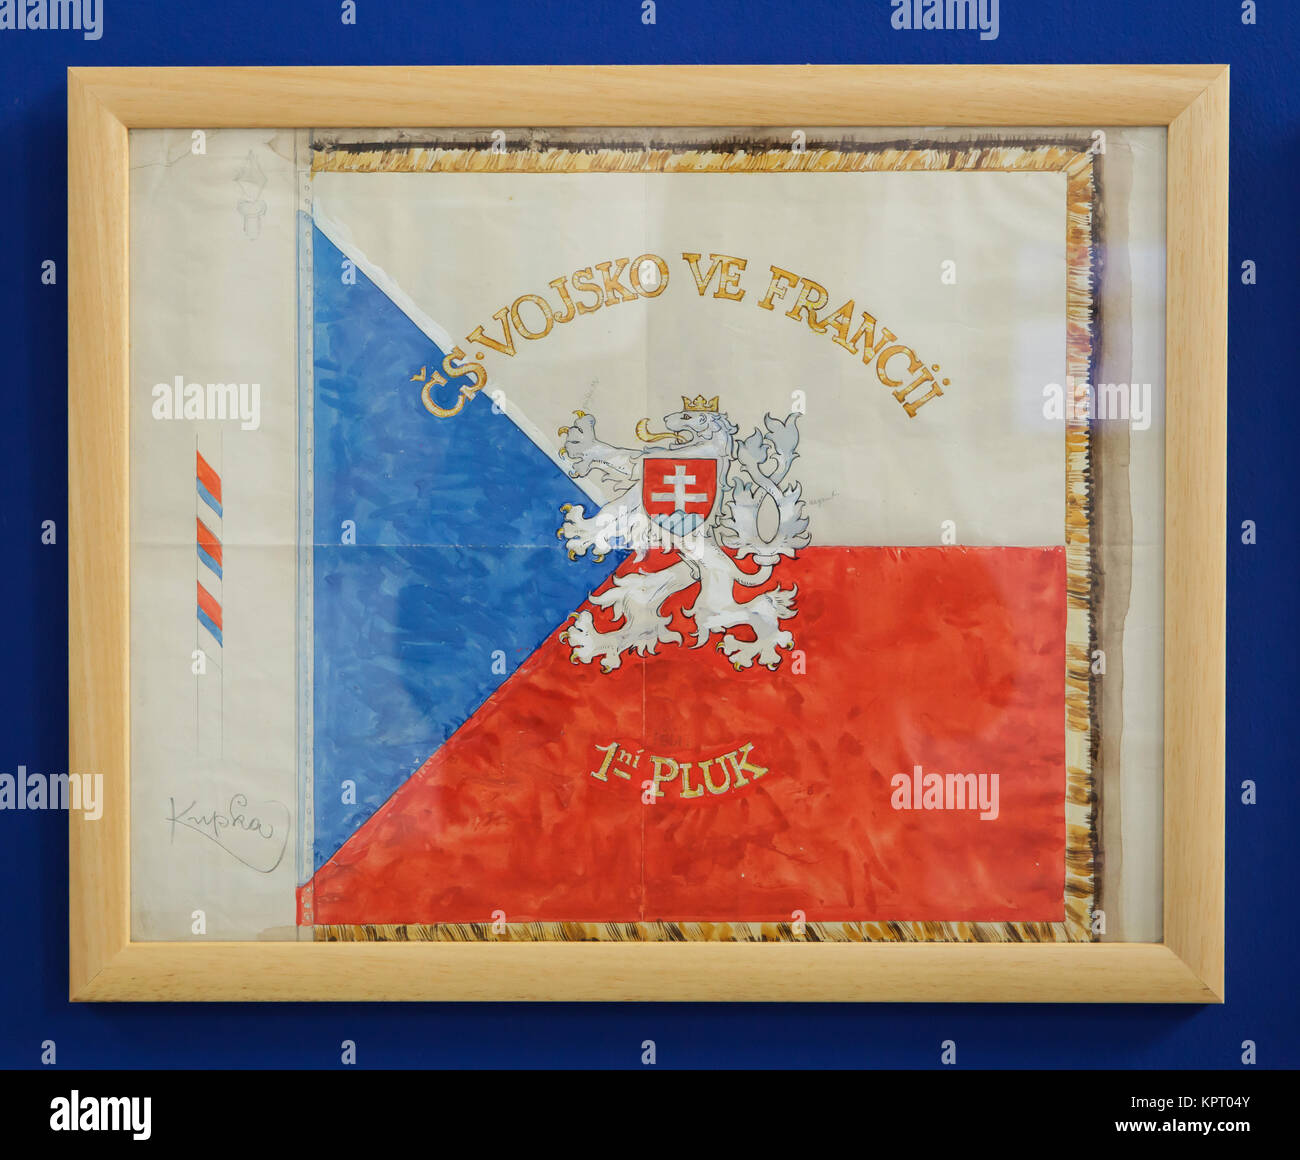 Dessin du drapeau du 1er Régiment de l'armée tchécoslovaque en France (1918-1919) par le peintre moderniste tchèque František Kupka sur l'affichage dans la galerie (Alšova jihočeská galerie) à Hluboká nad Vltavou en Bohême du Sud, en République tchèque. Banque D'Images